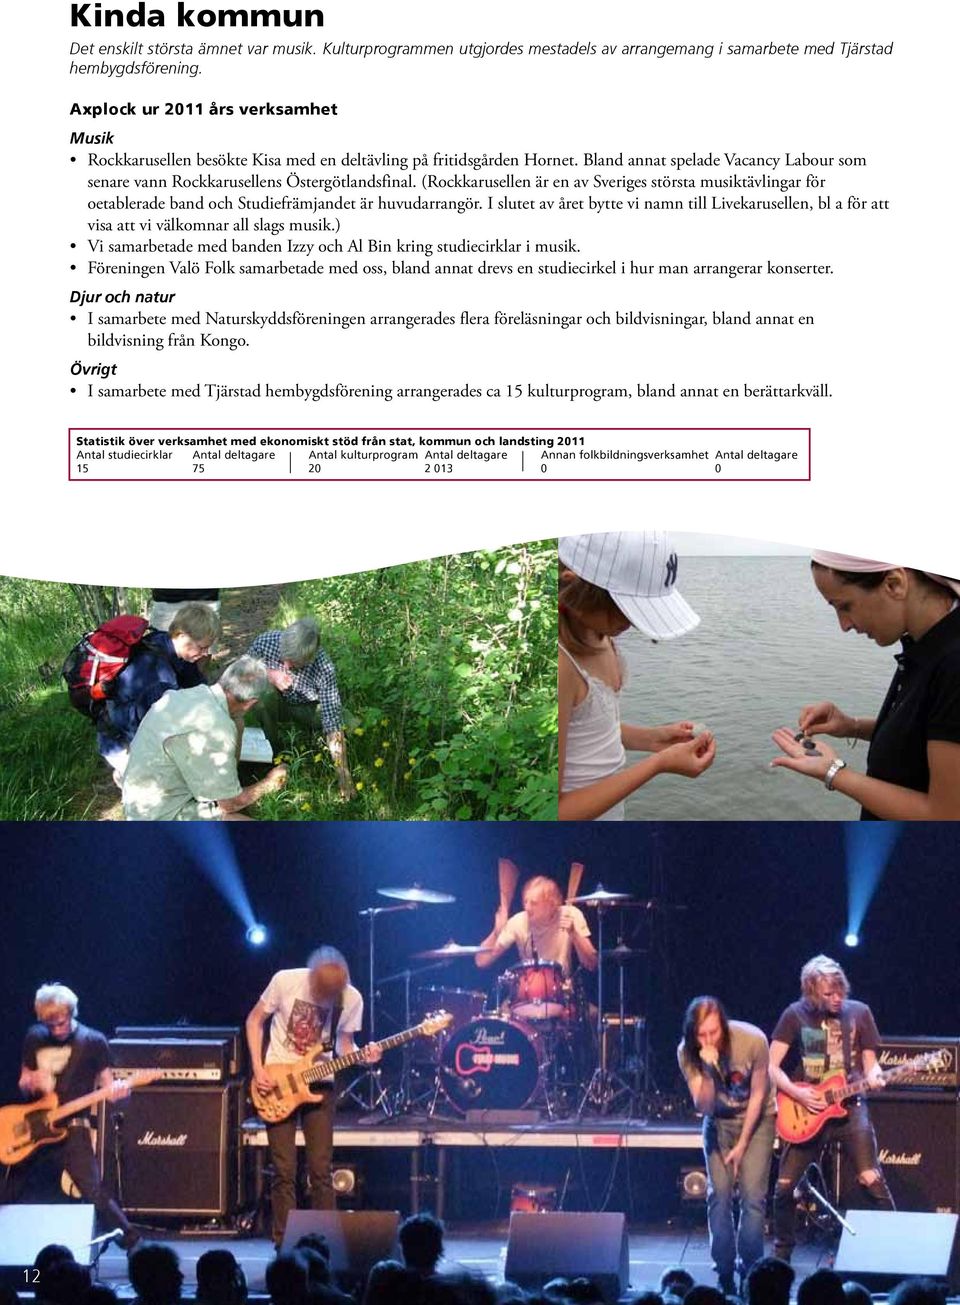 (Rockkarusellen är en av Sveriges största musiktävlingar för oetablerade band och Studiefrämjandet är huvudarrangör.